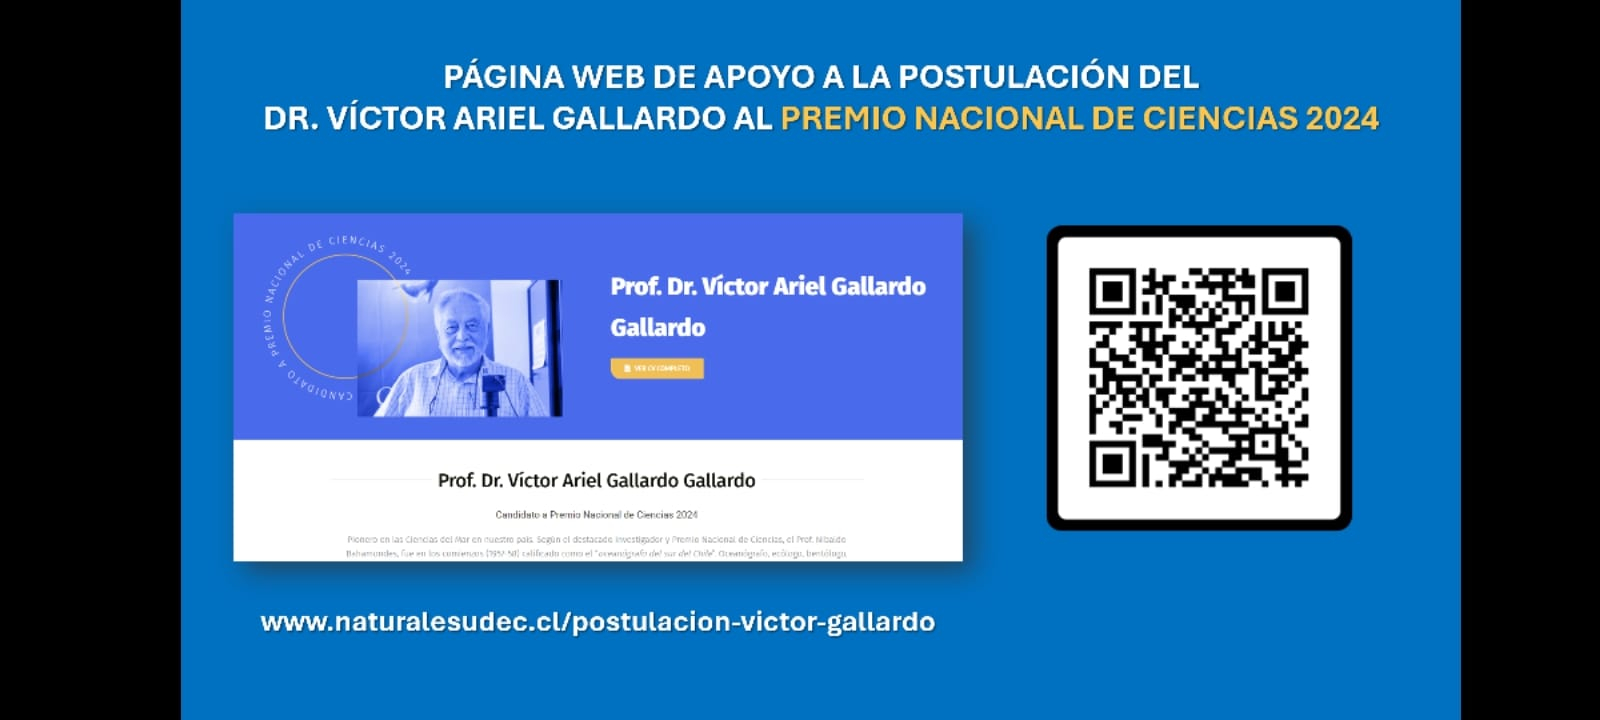 Apoyo a la postulación del socio, Dr. Victor Ariel Gallardo